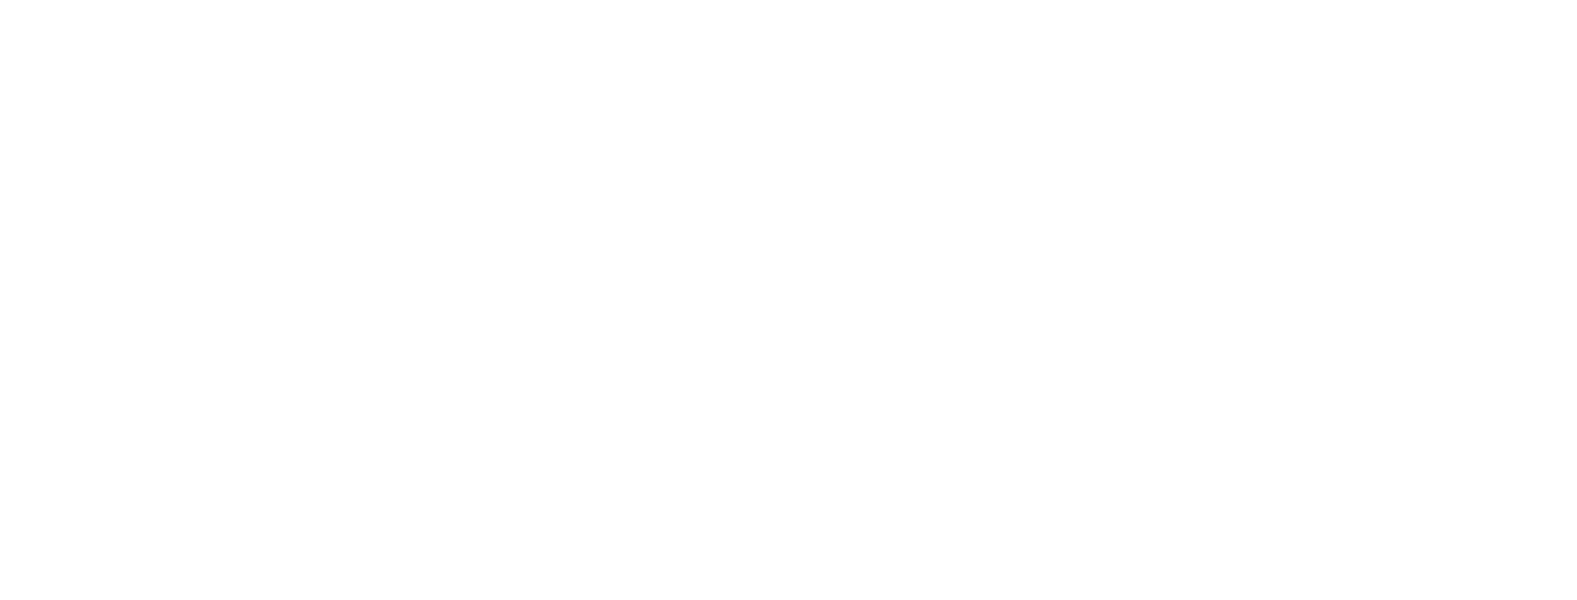 British APCO1